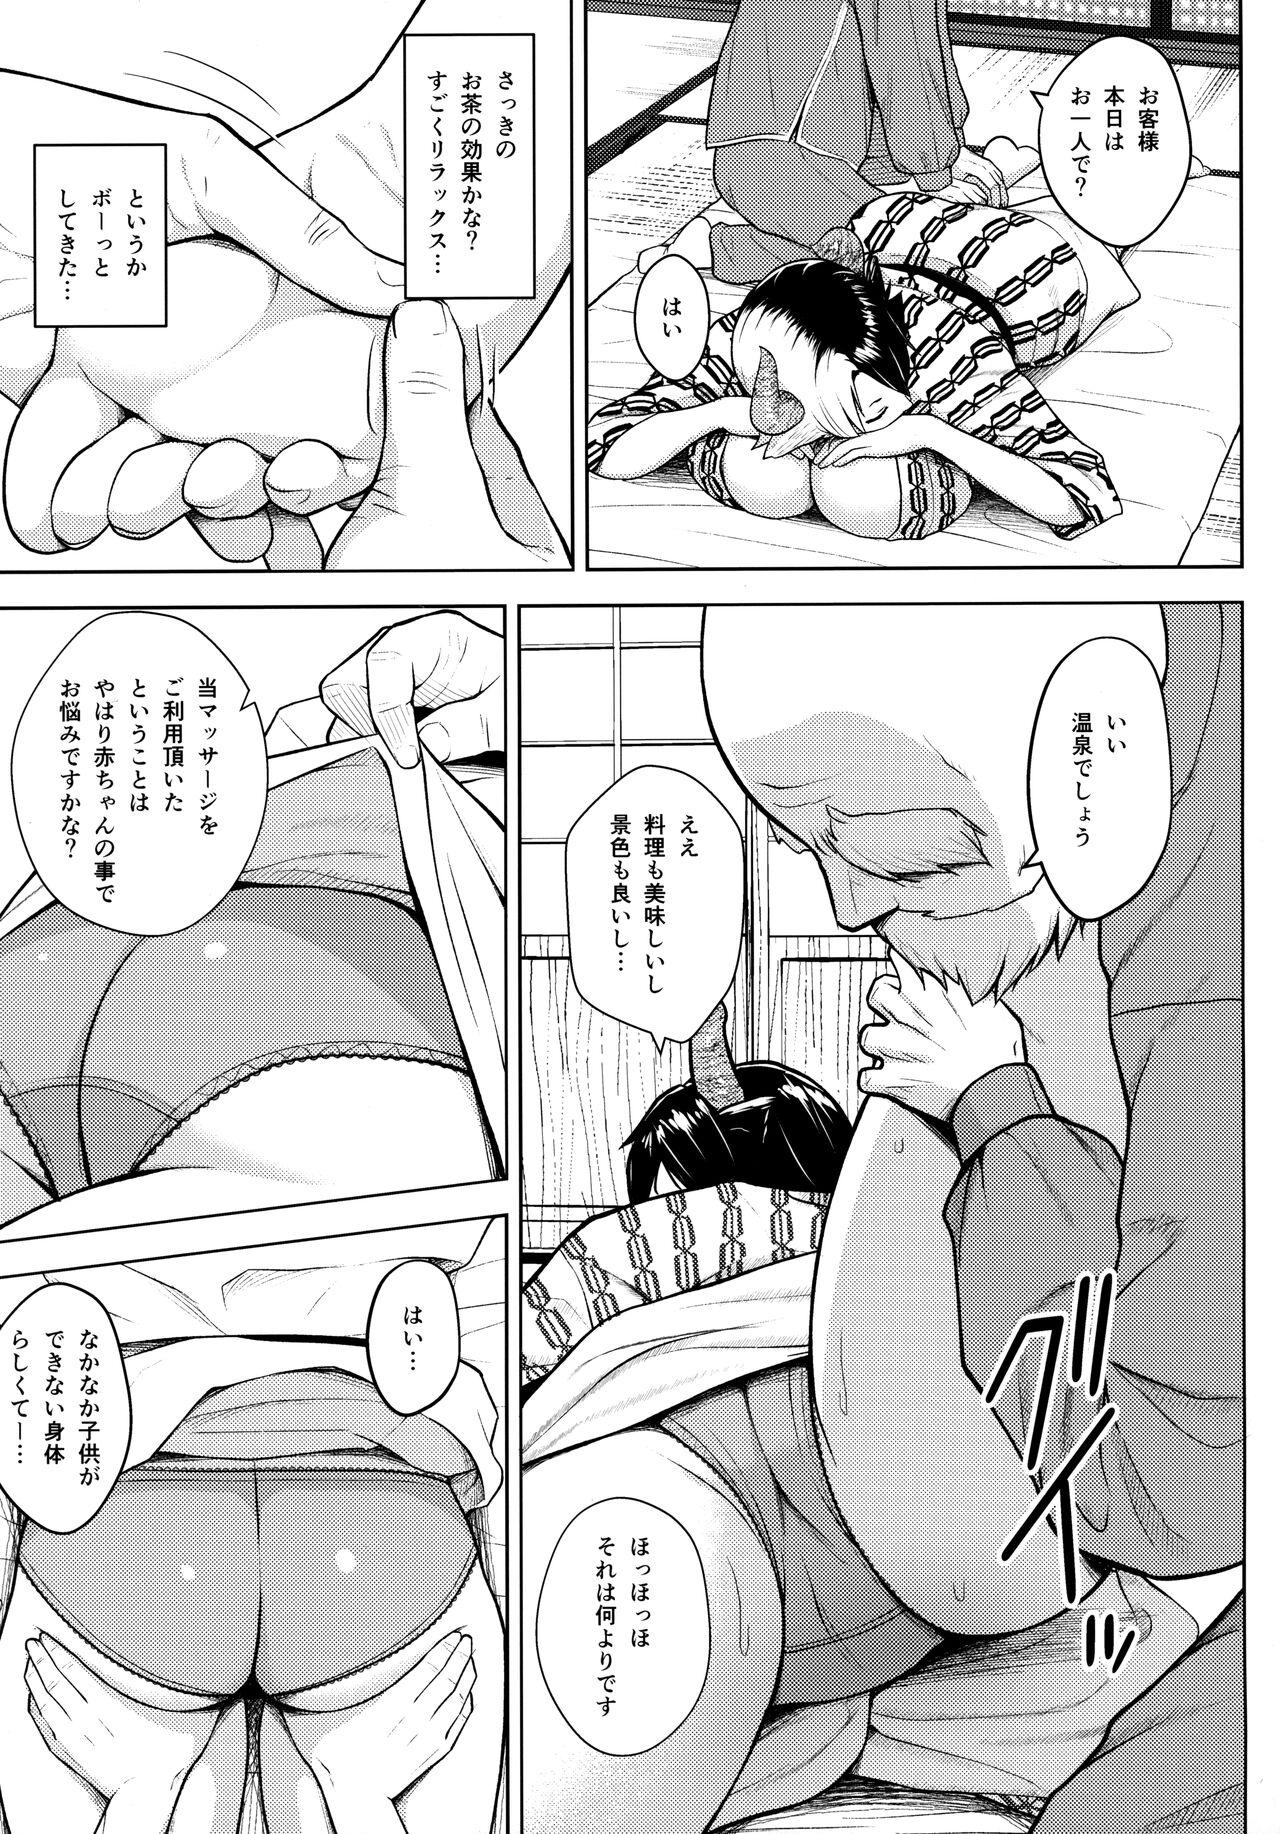 3some Oku-san no Oppai ga Dekasugiru no ga Warui! 4 - Touhou project Amatuer - Page 8